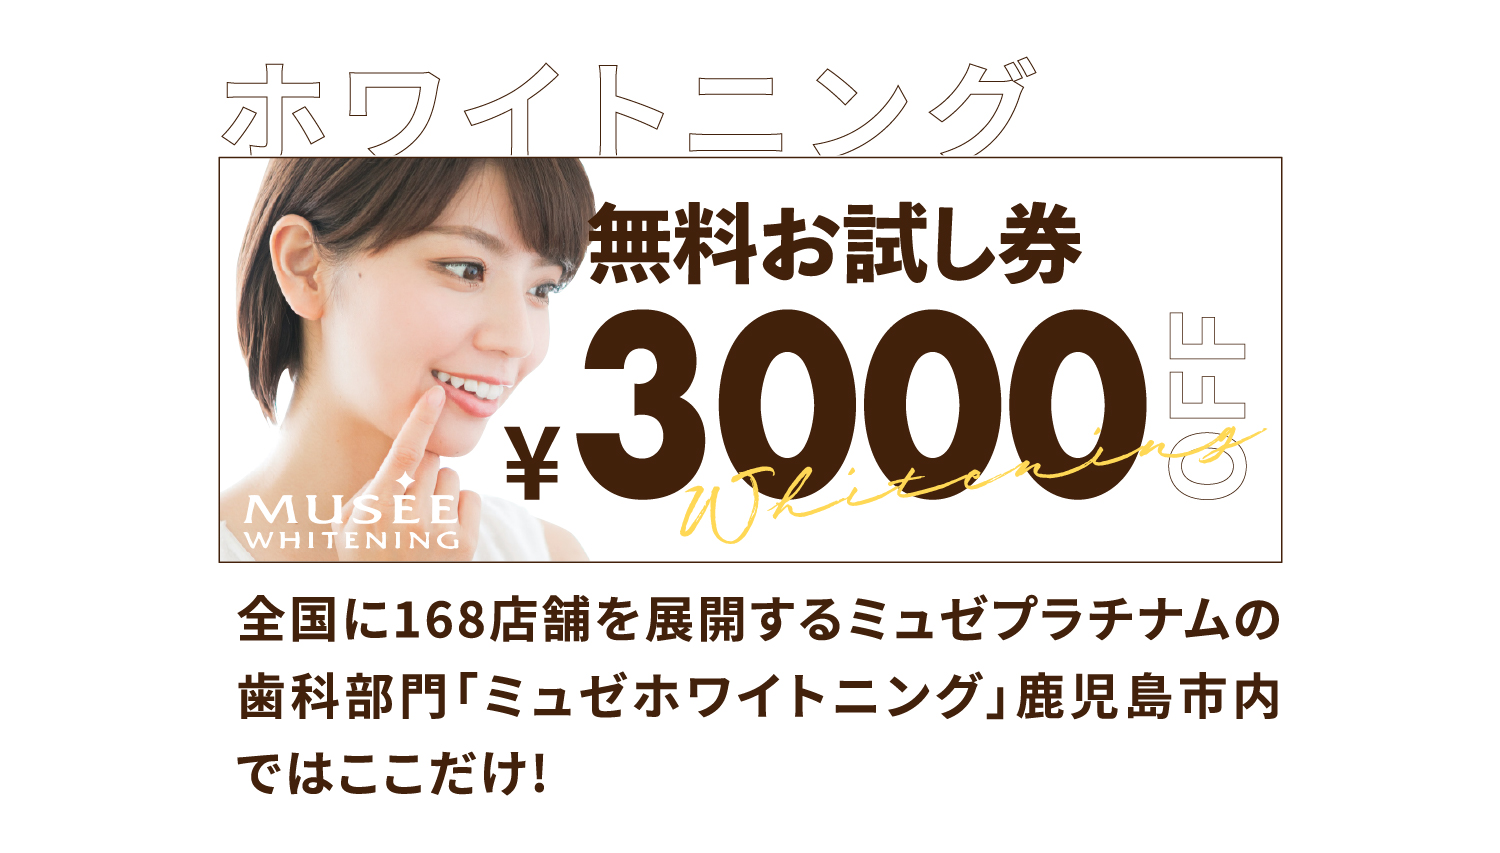 【ホワイトニング】無料お試し券 ¥3,000 OFF